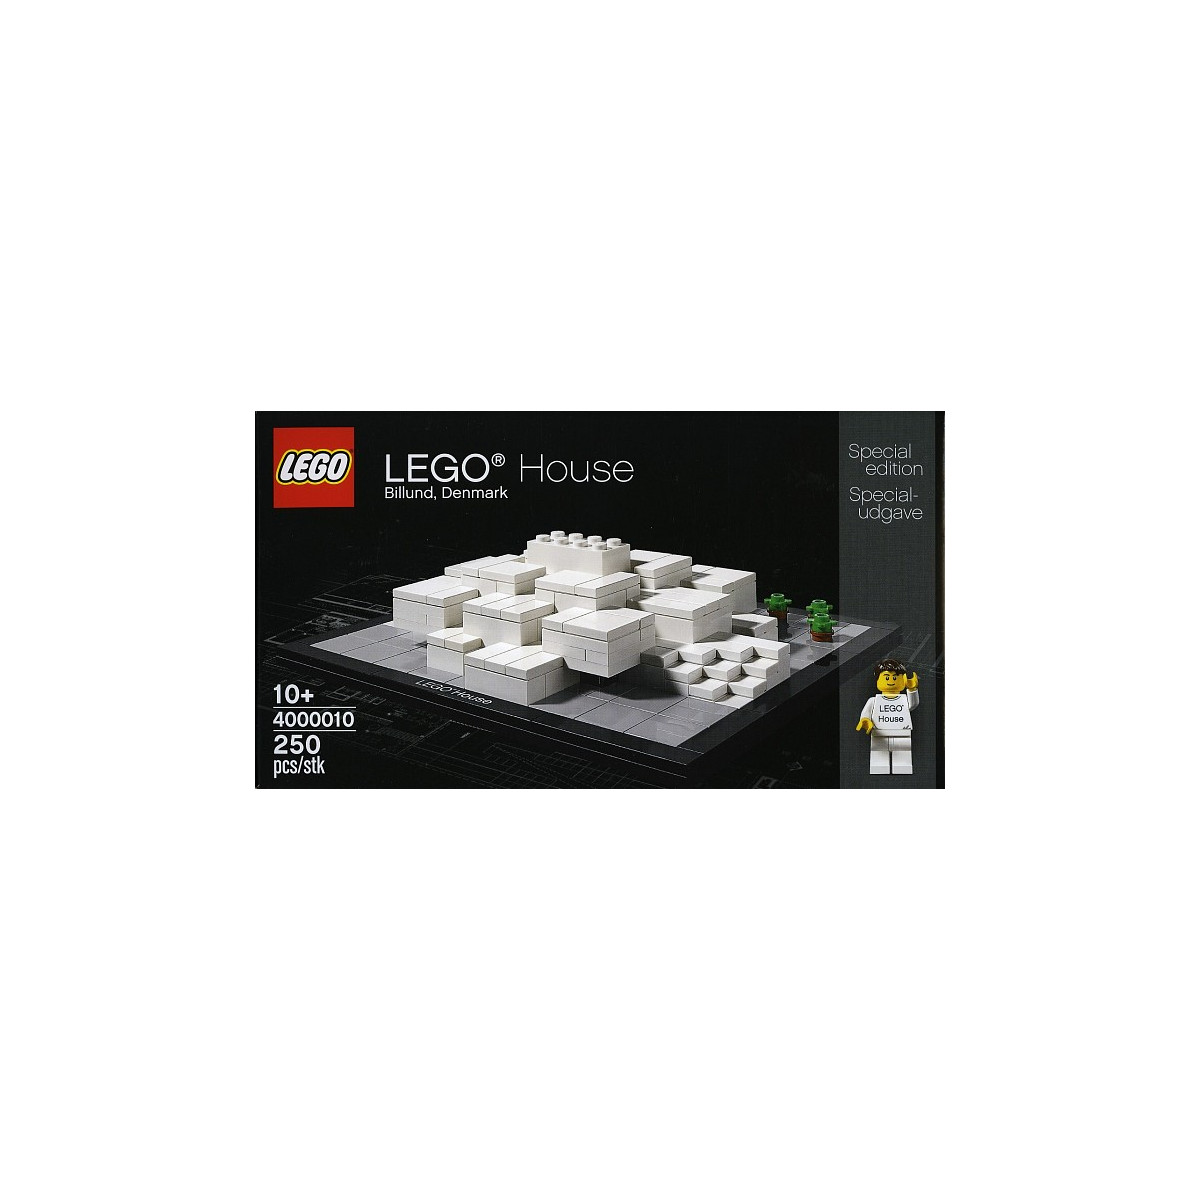 LEGO Brand LEGO House - 4000010 - Da 10 anni -  Signed